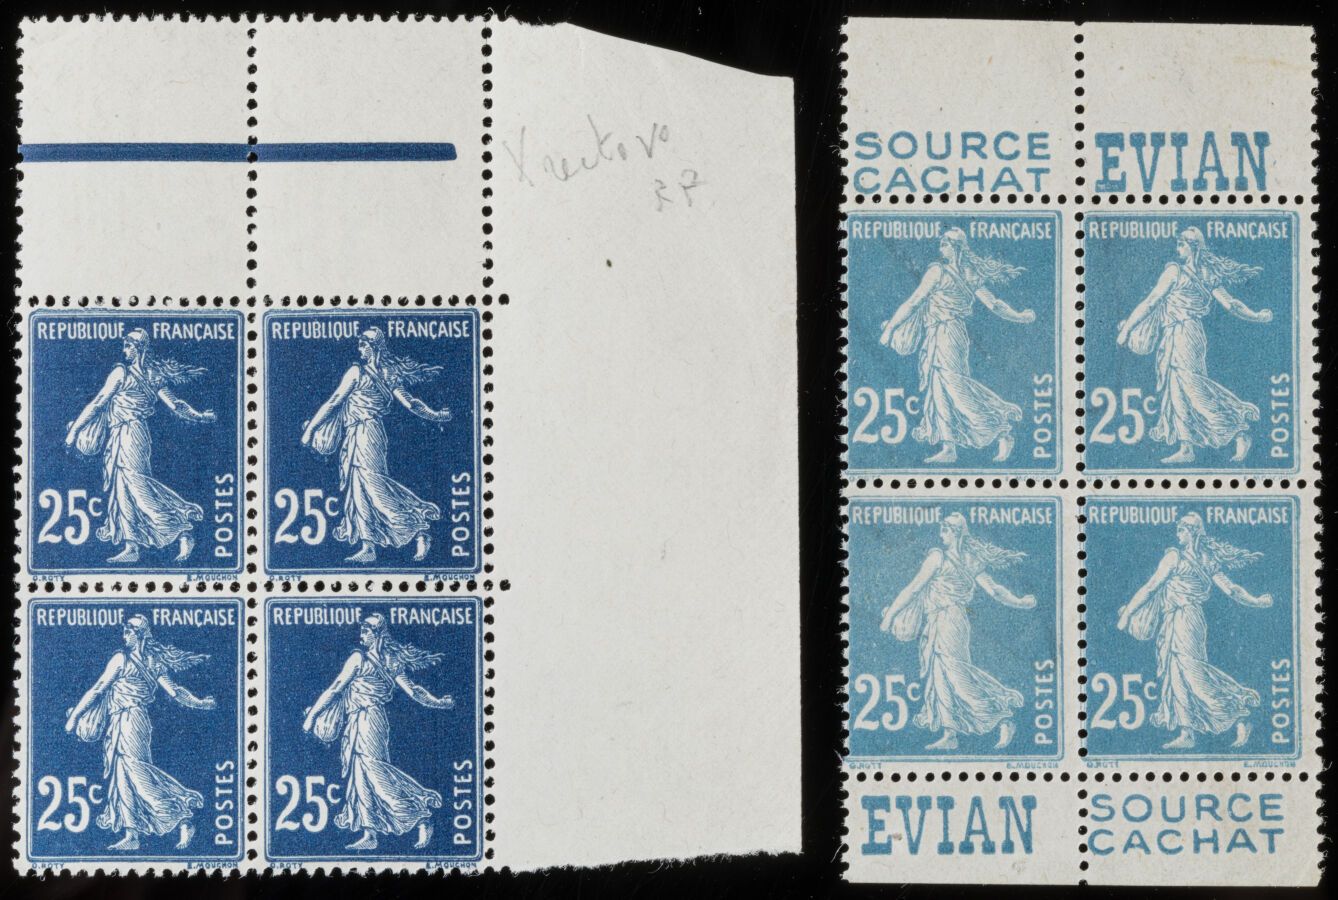 Null 邮票N°140s - 一套4枚邮票，正反面印刷+品种，有趣的一套。评分超过500欧元。